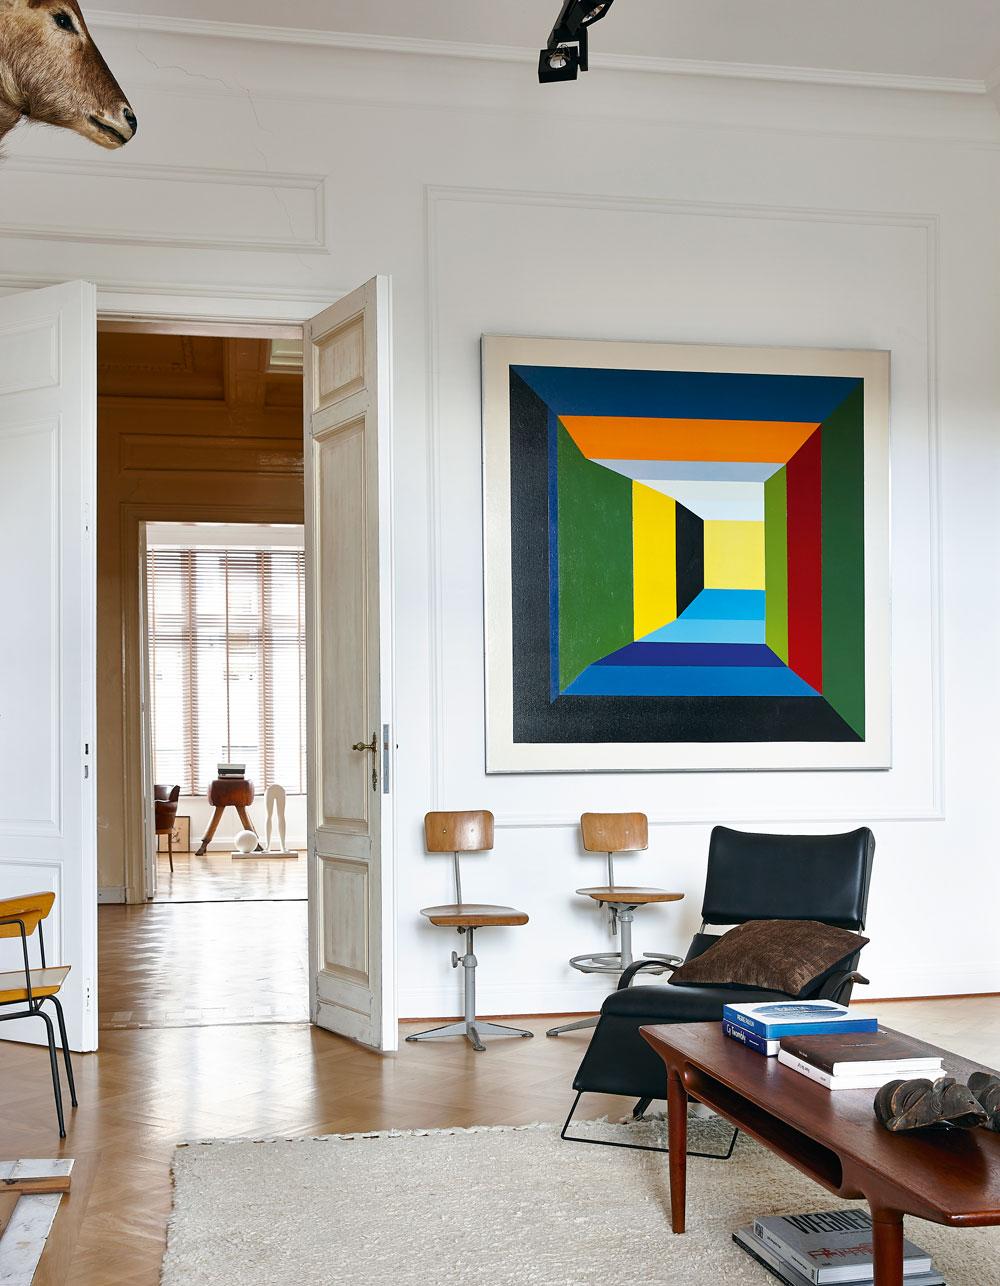 Het mooiste doorzicht van de woning, met als blikvanger een schilderij van Guy Vandenbranden, op wiens kunst Van Steenbergen zijn nieuwste collectie baseert.